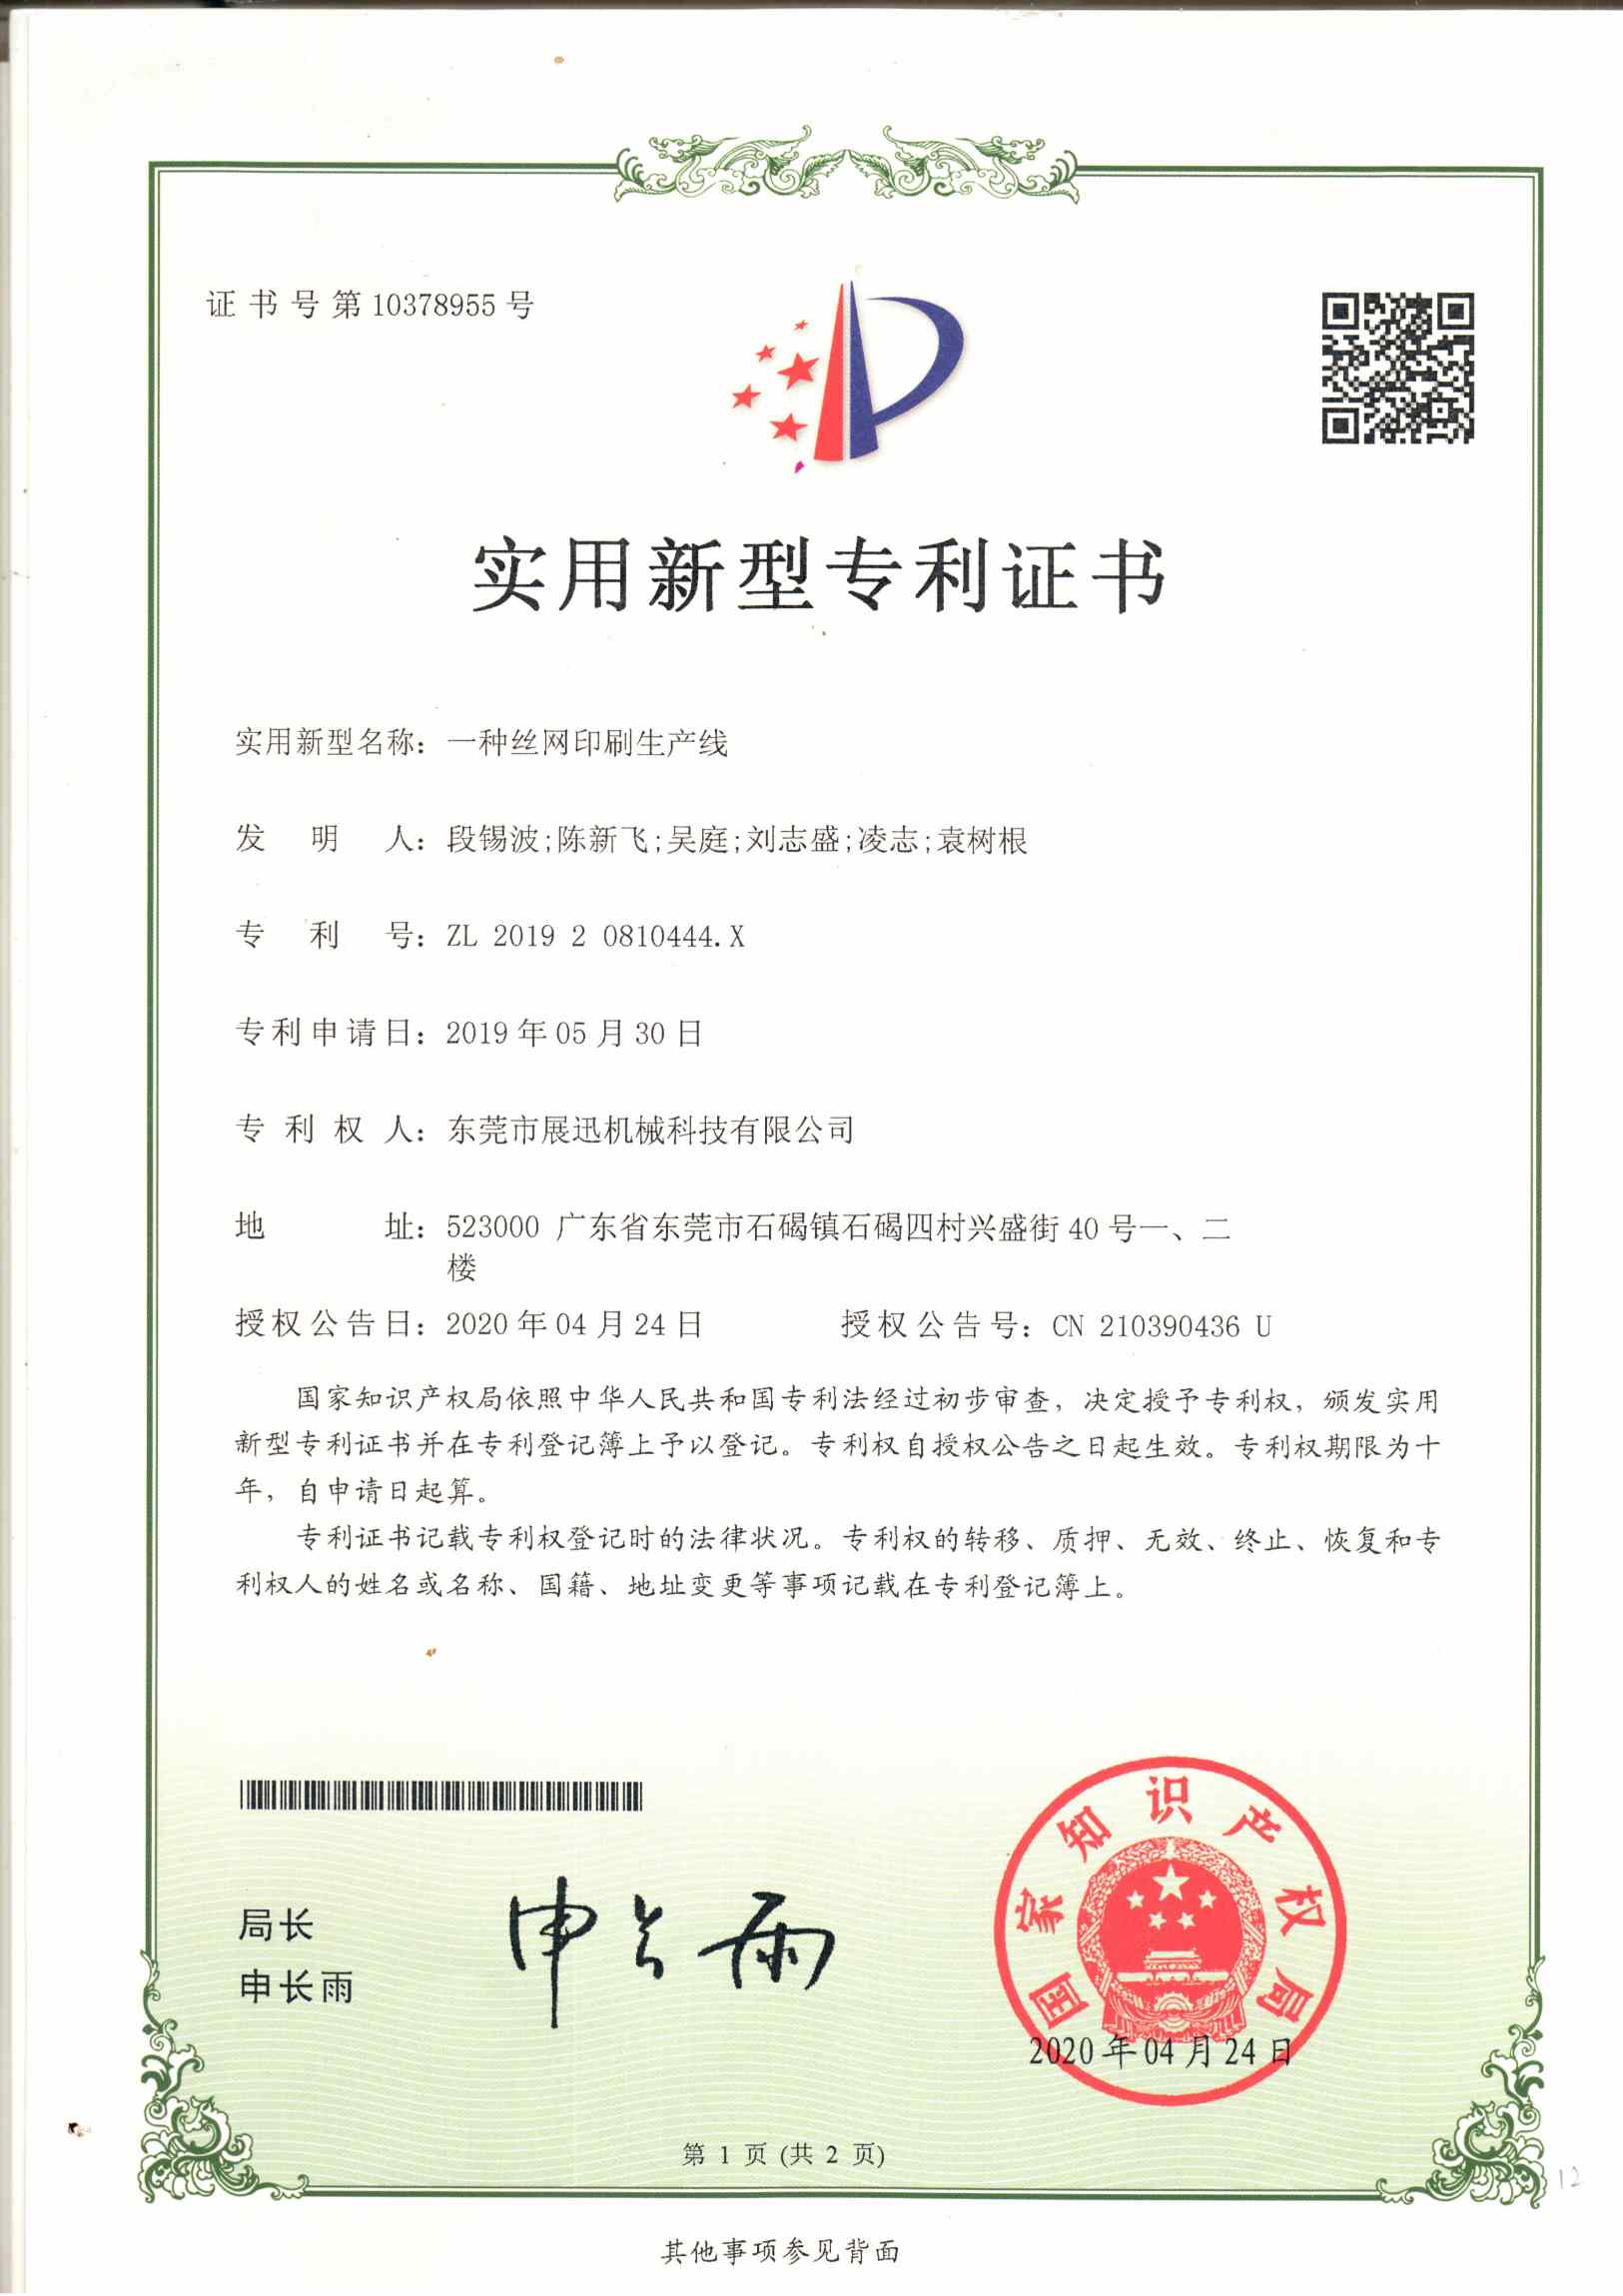 丝网印刷生产线专利证书